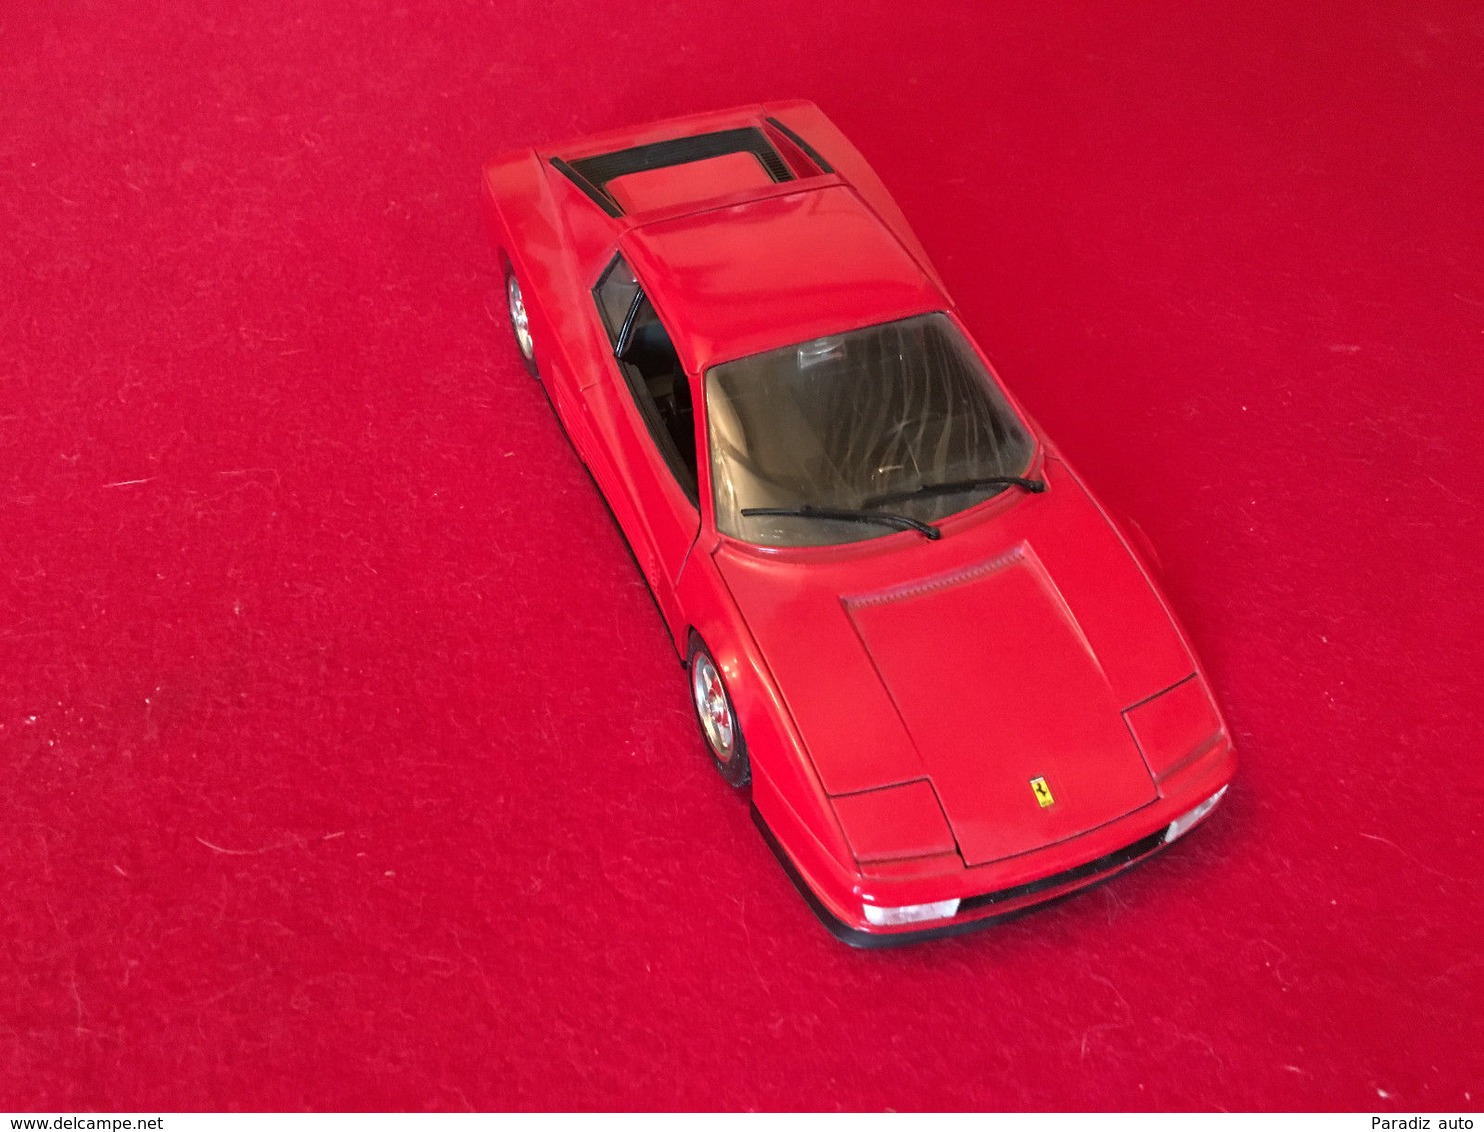 Ferrari Testarossa (1984) 1/18 Burago - Burago